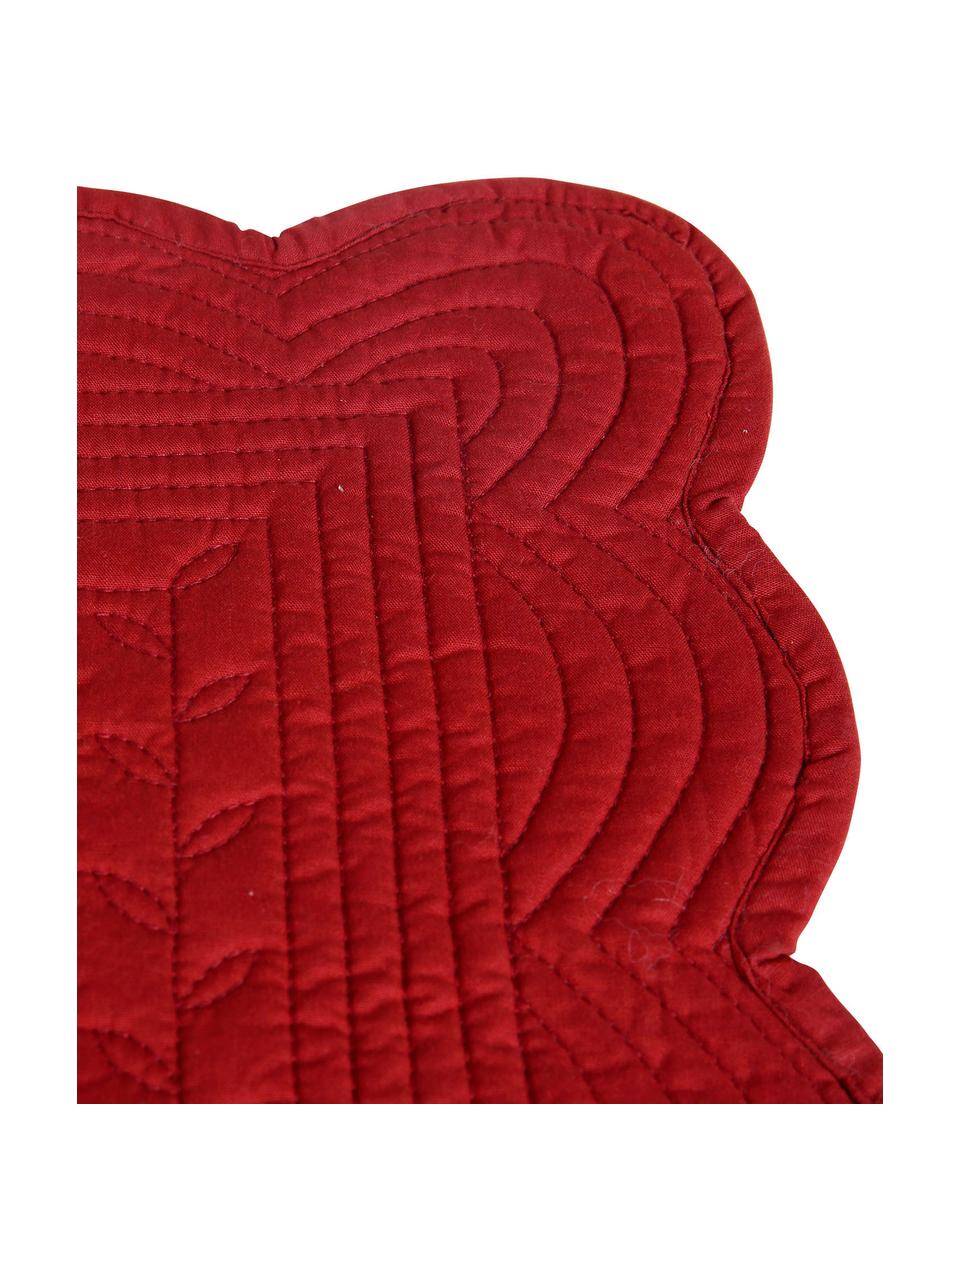 Podkładka z bawełny Boutis, 2 szt., Bawełna, Czerwony, S 49 x D 34 cm